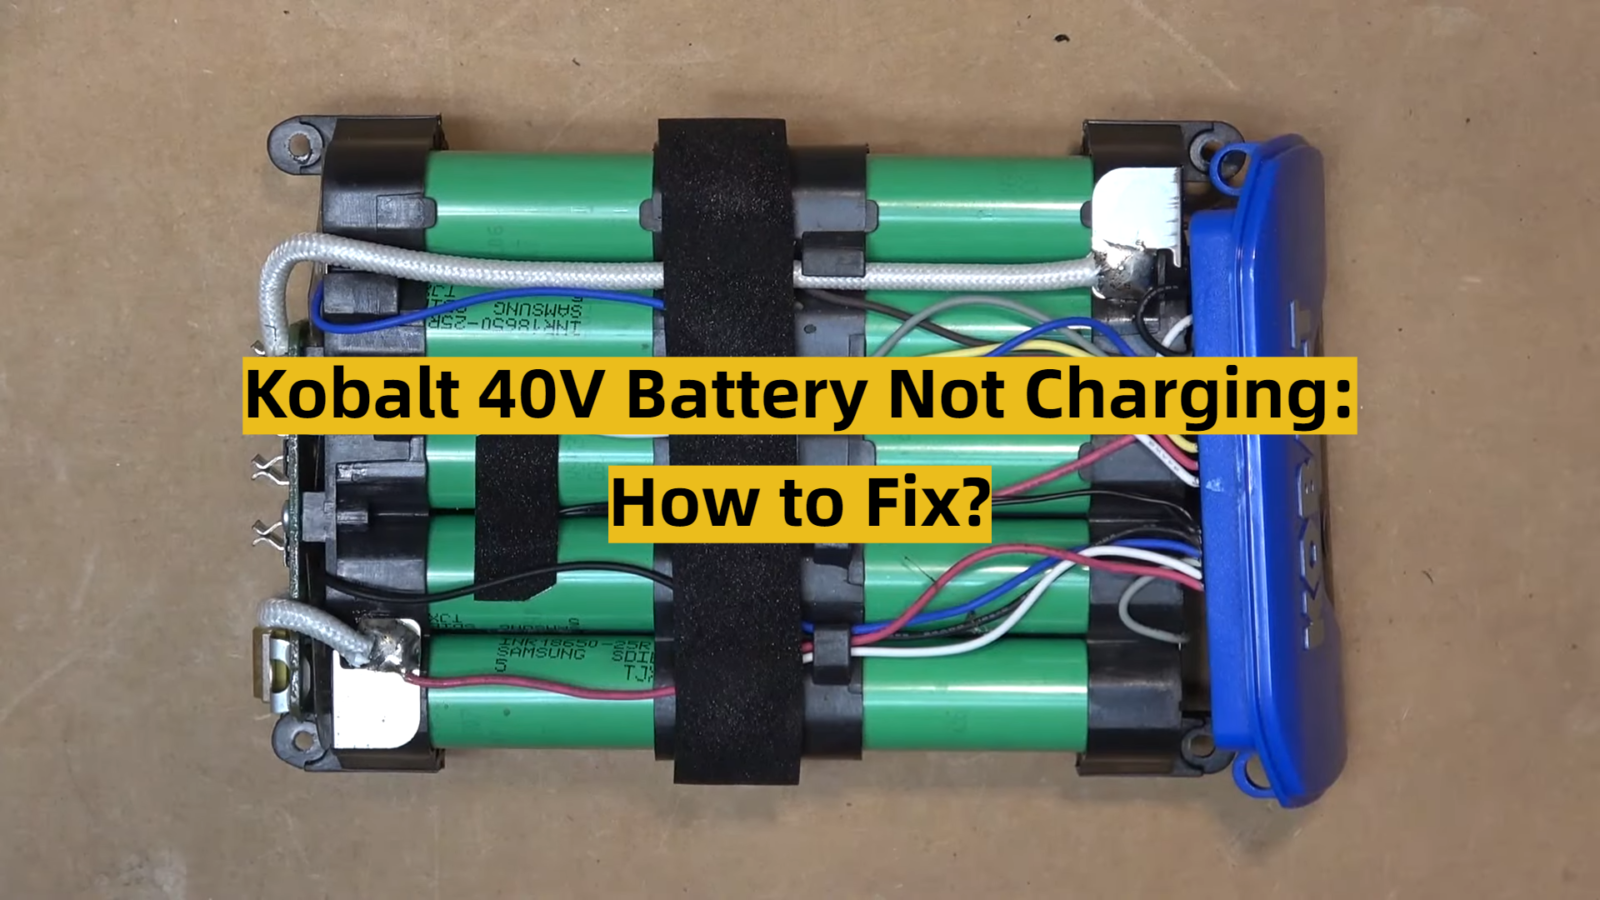 Kobalt 40V Battery Not Charging: How to Fix?